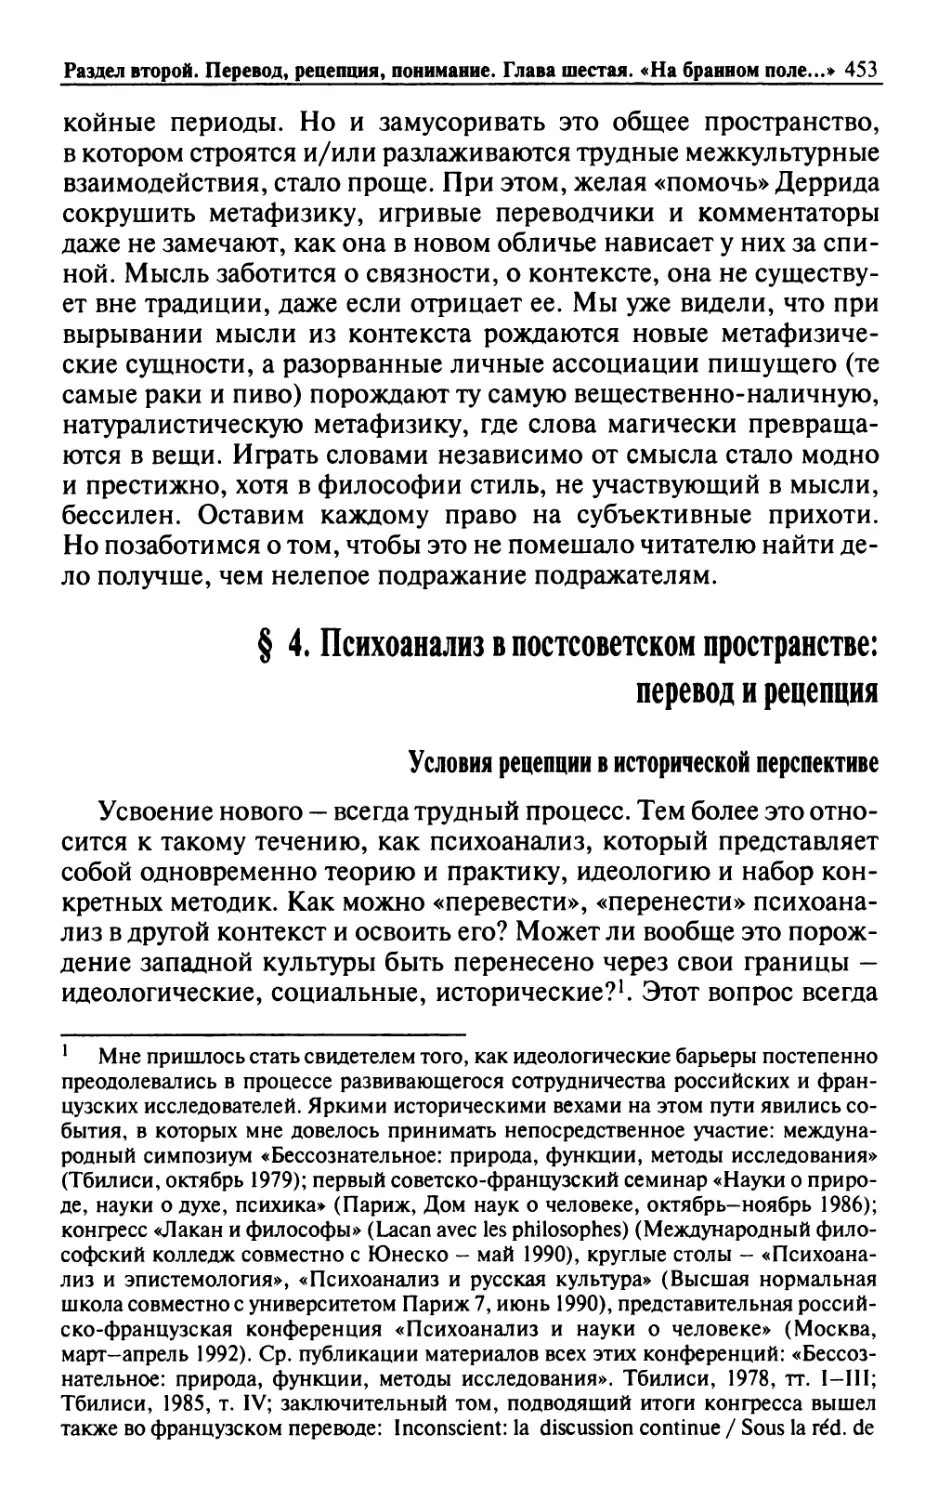 § 4. Психоанализ в постсоветском пространстве: перевод и рецепция